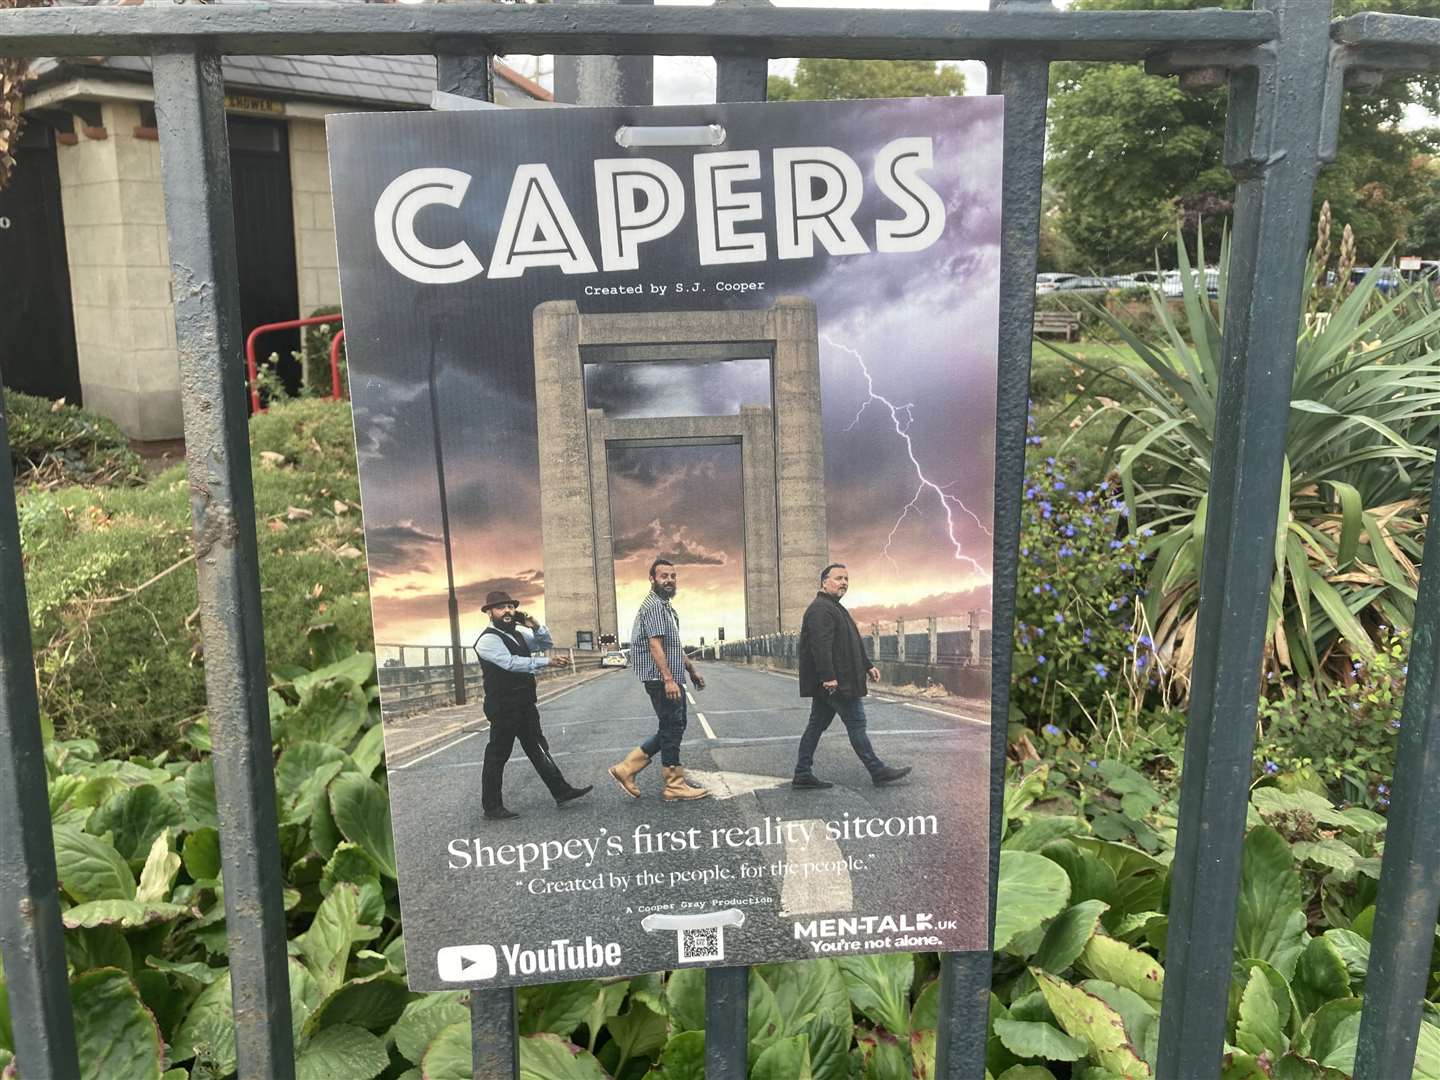 Capers poster seen in Queenborough